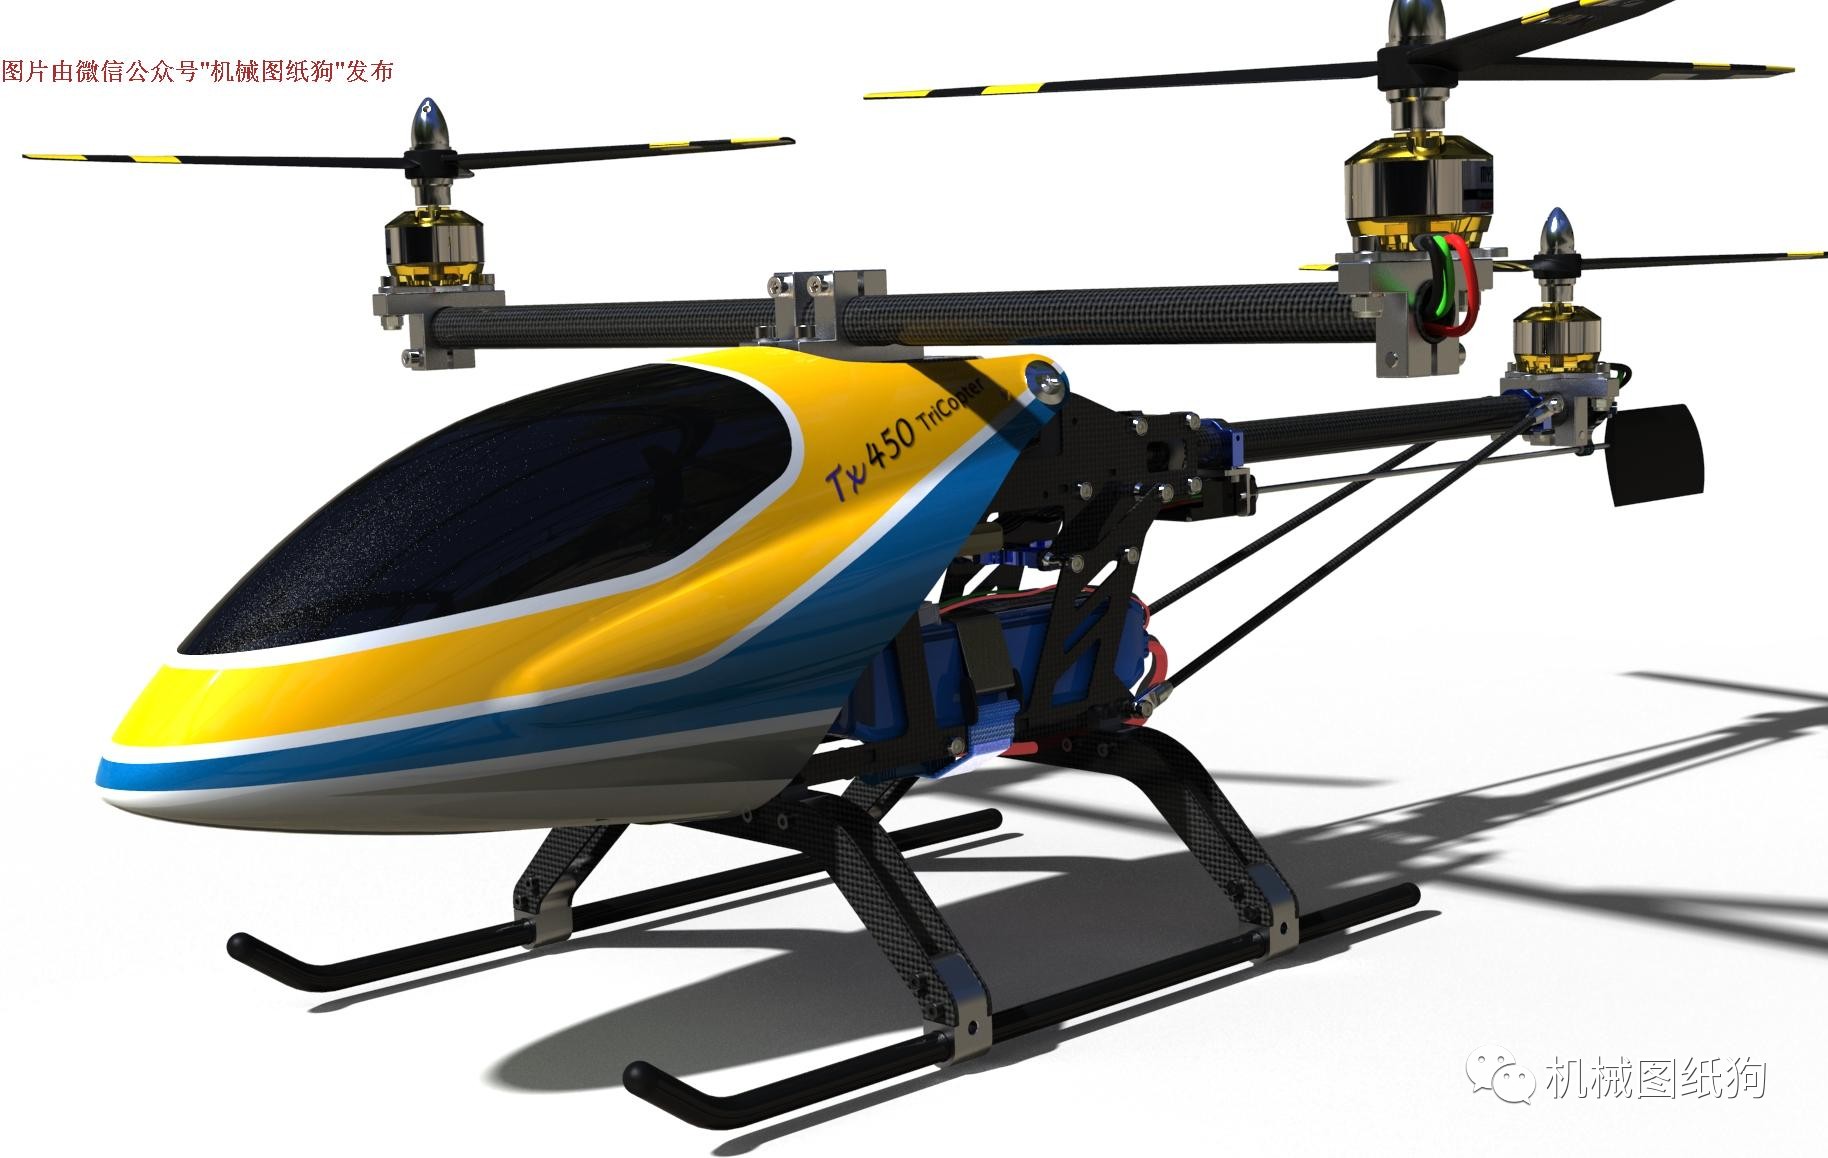 【飞行模型】三旋翼直升机(多旋翼飞行器)3d图纸 igs